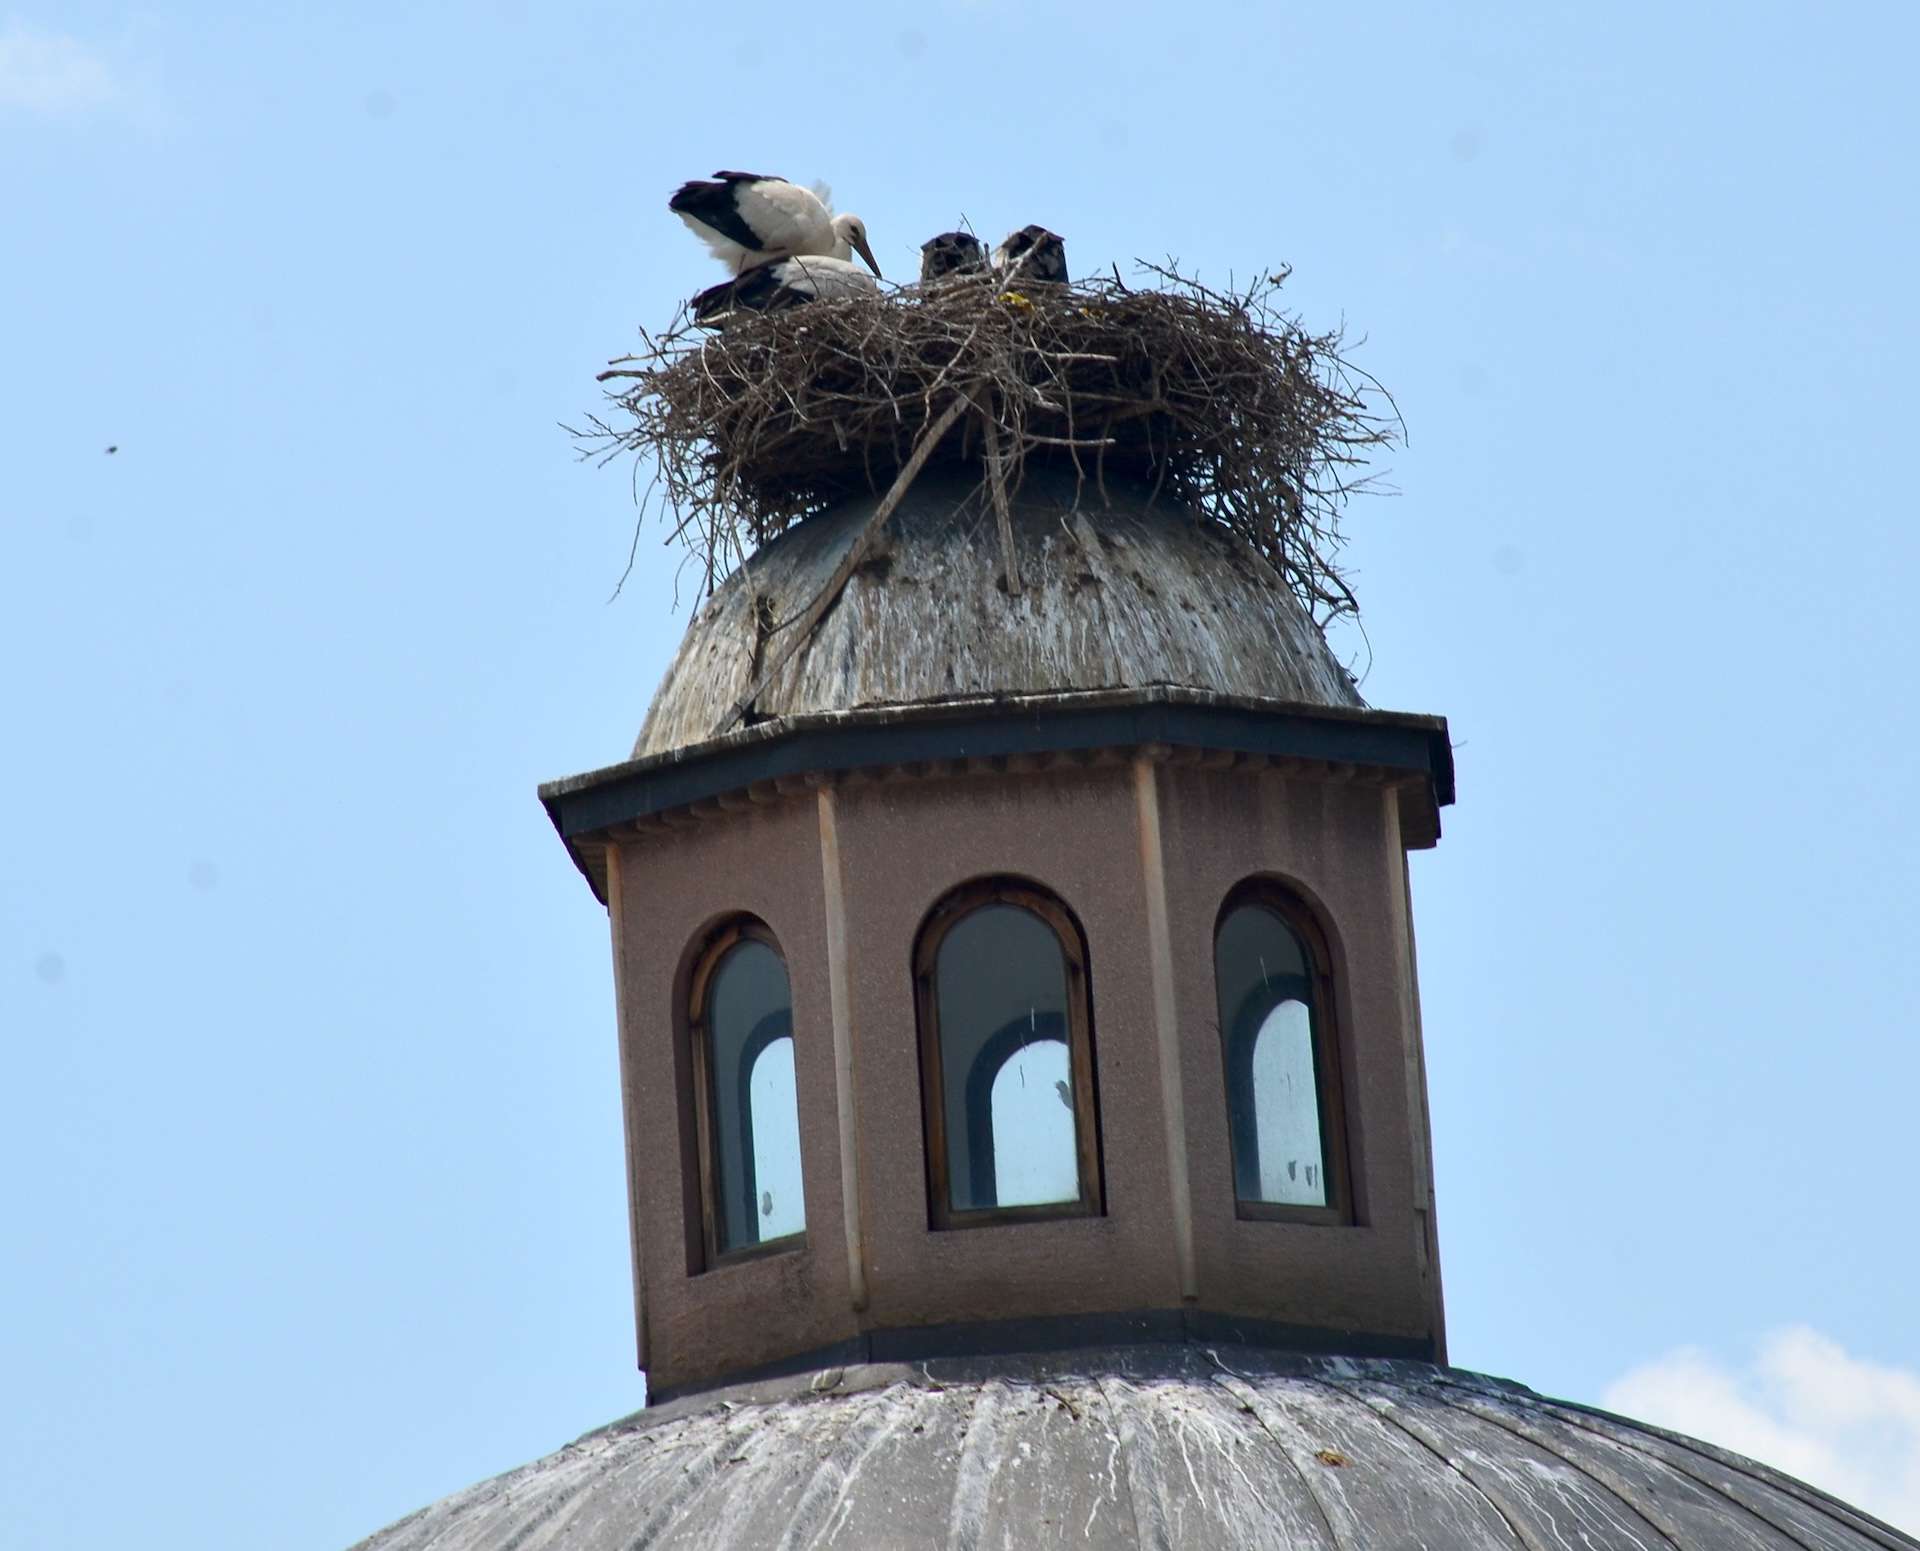 Stork nest on the Saadet Hatun Hamam